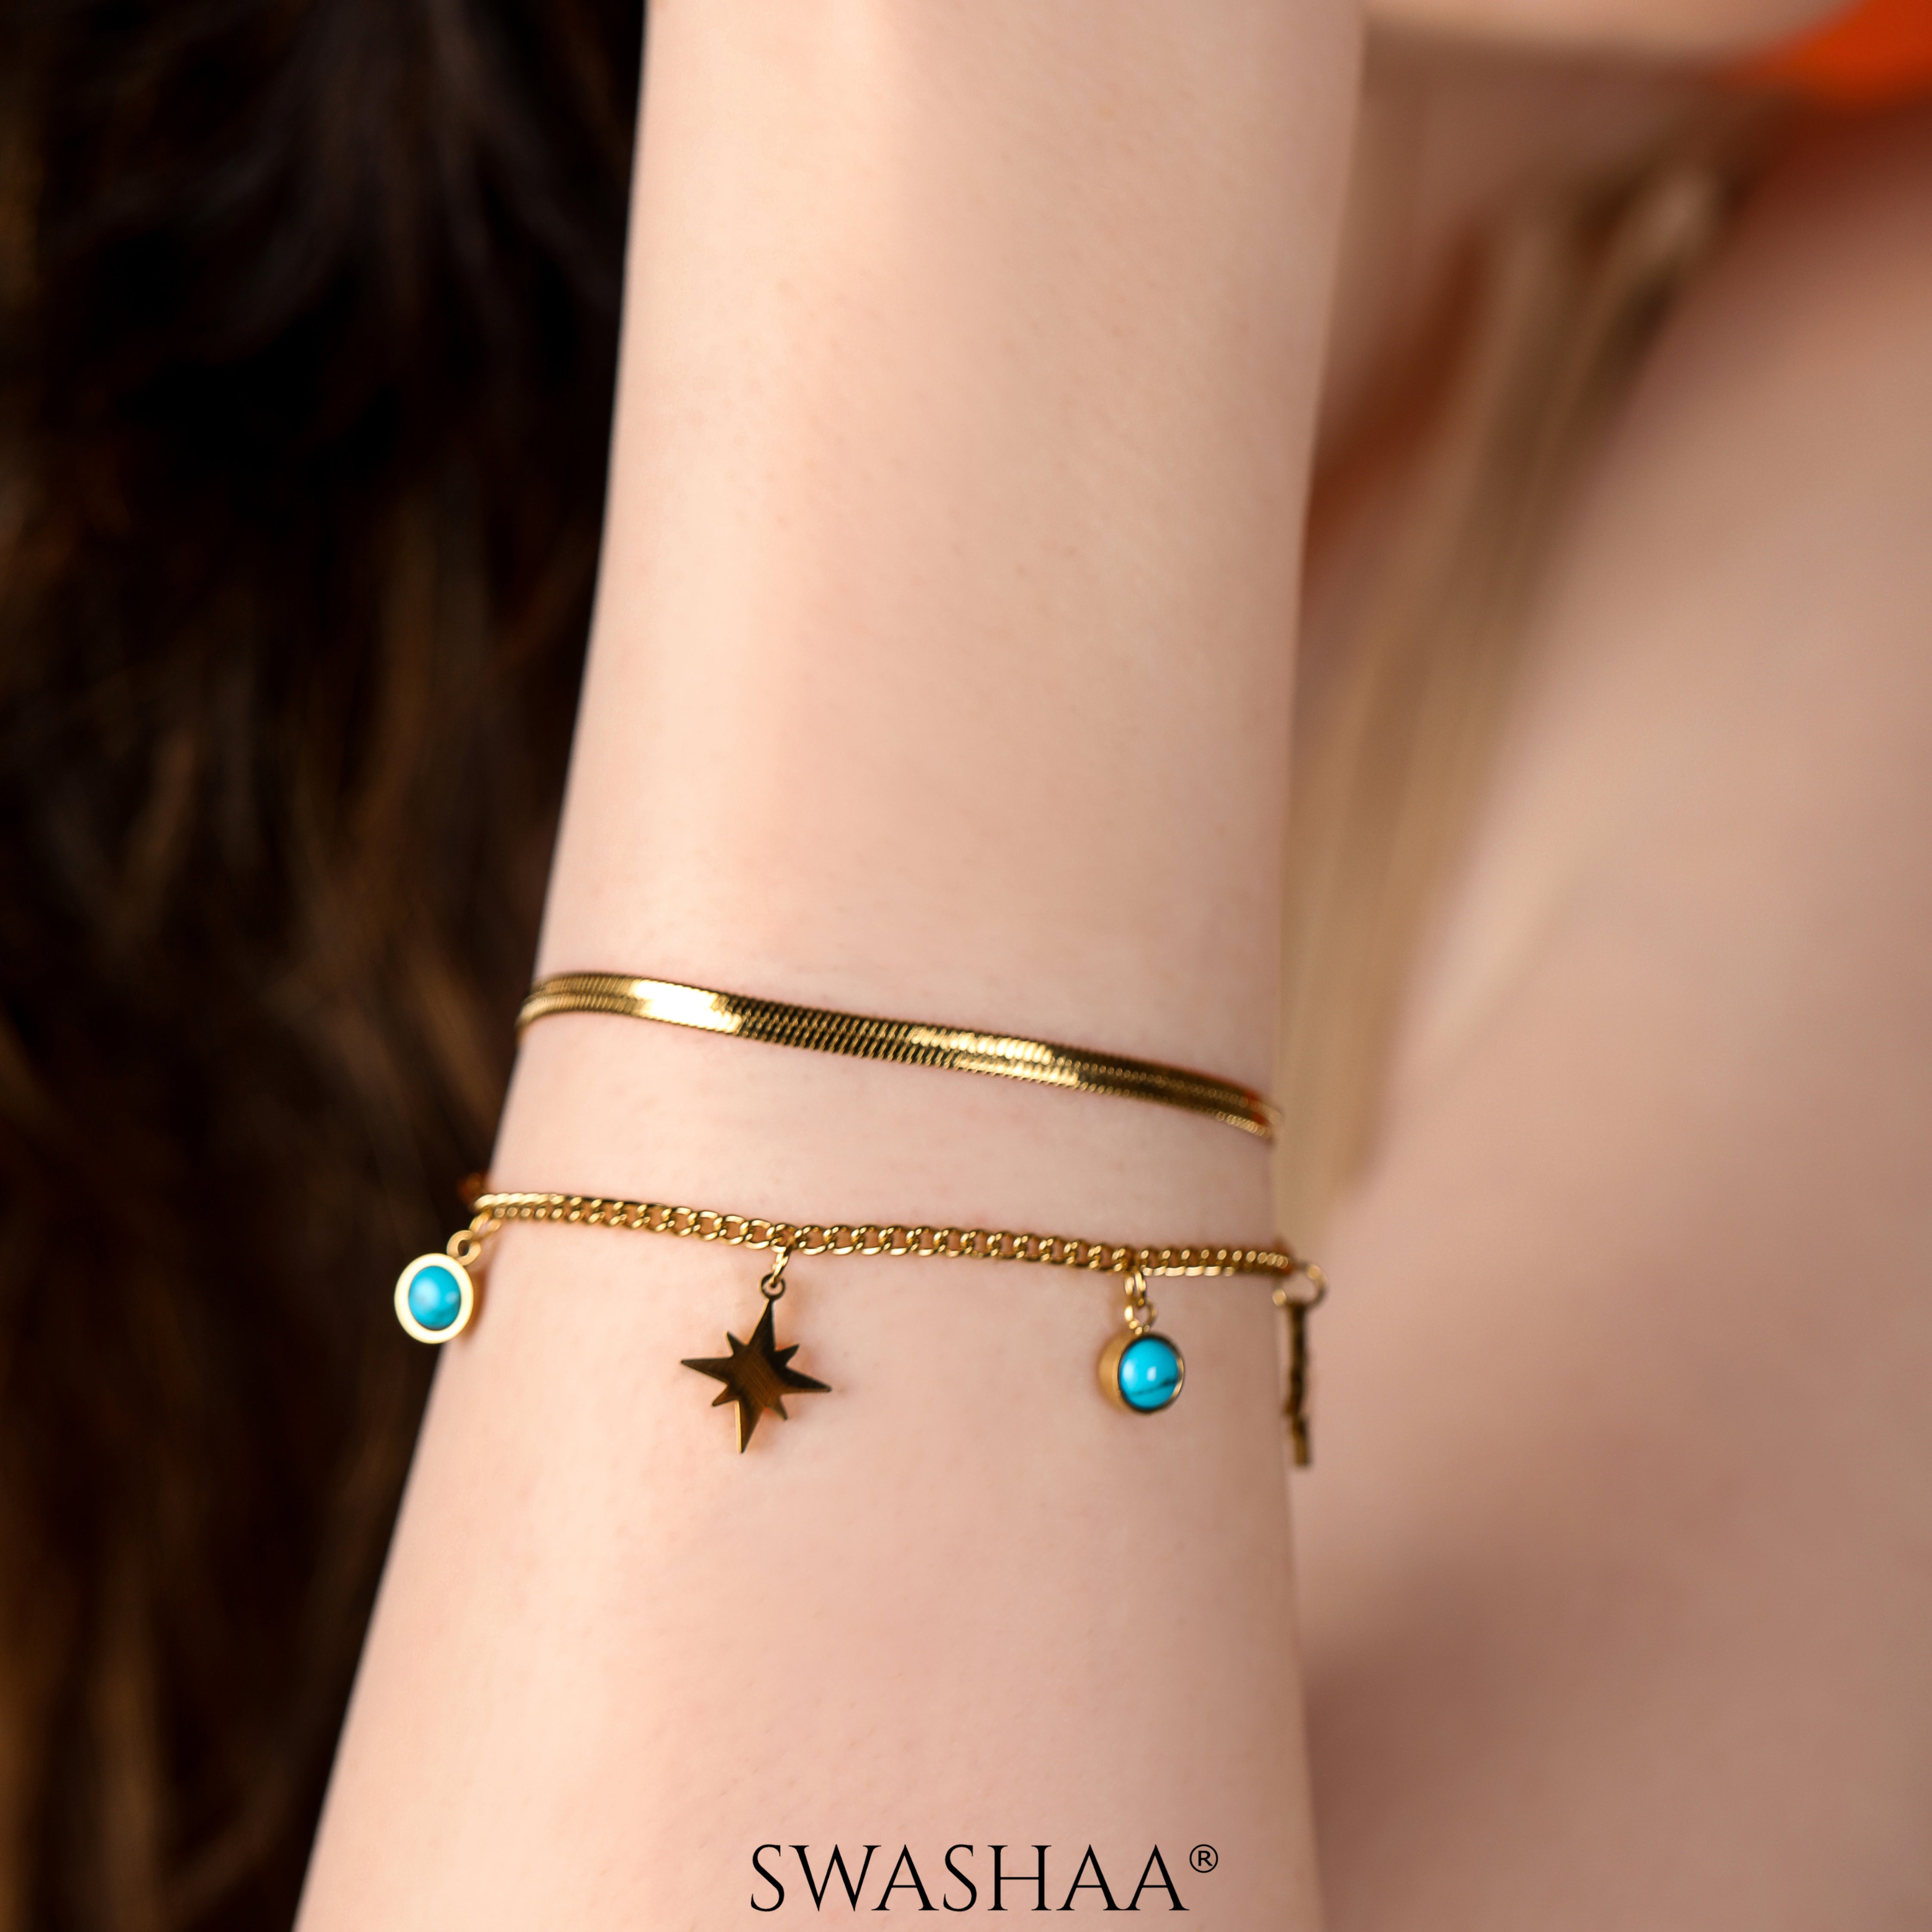 Zoya Star Bracelet – Swashaa